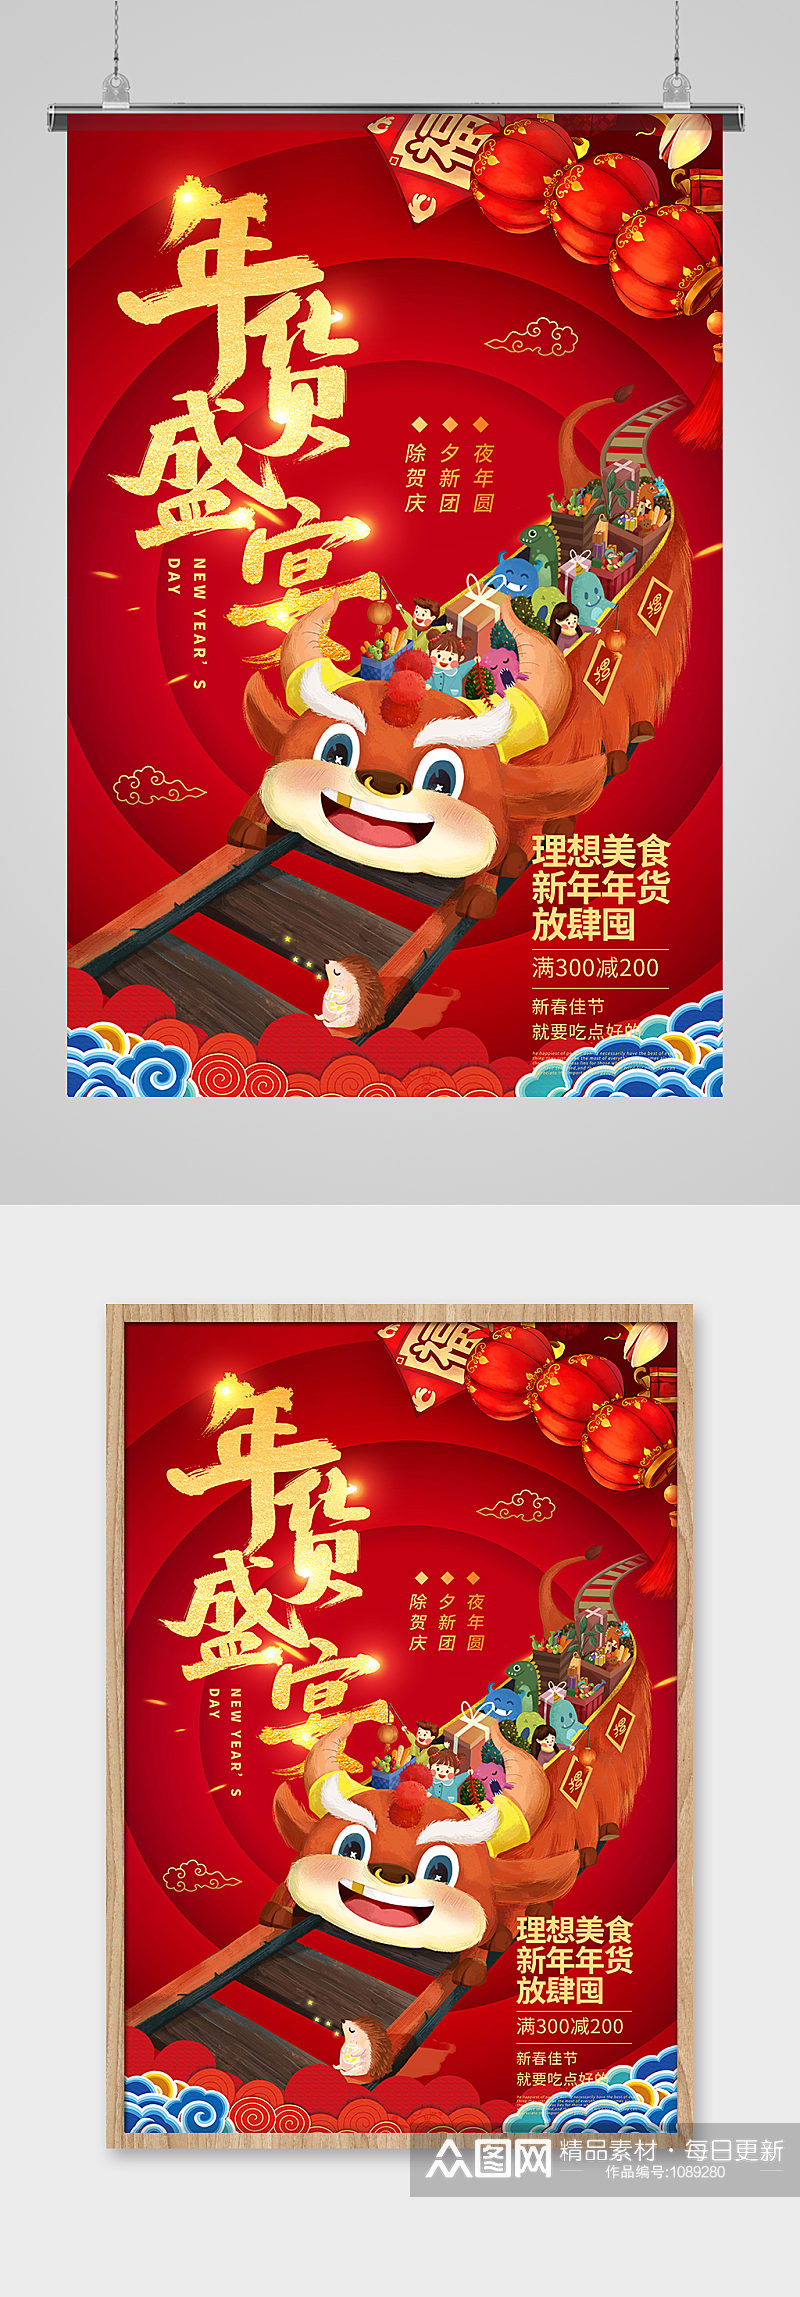 红色喜庆大气年货盛宴新年春节年货宣传海报素材